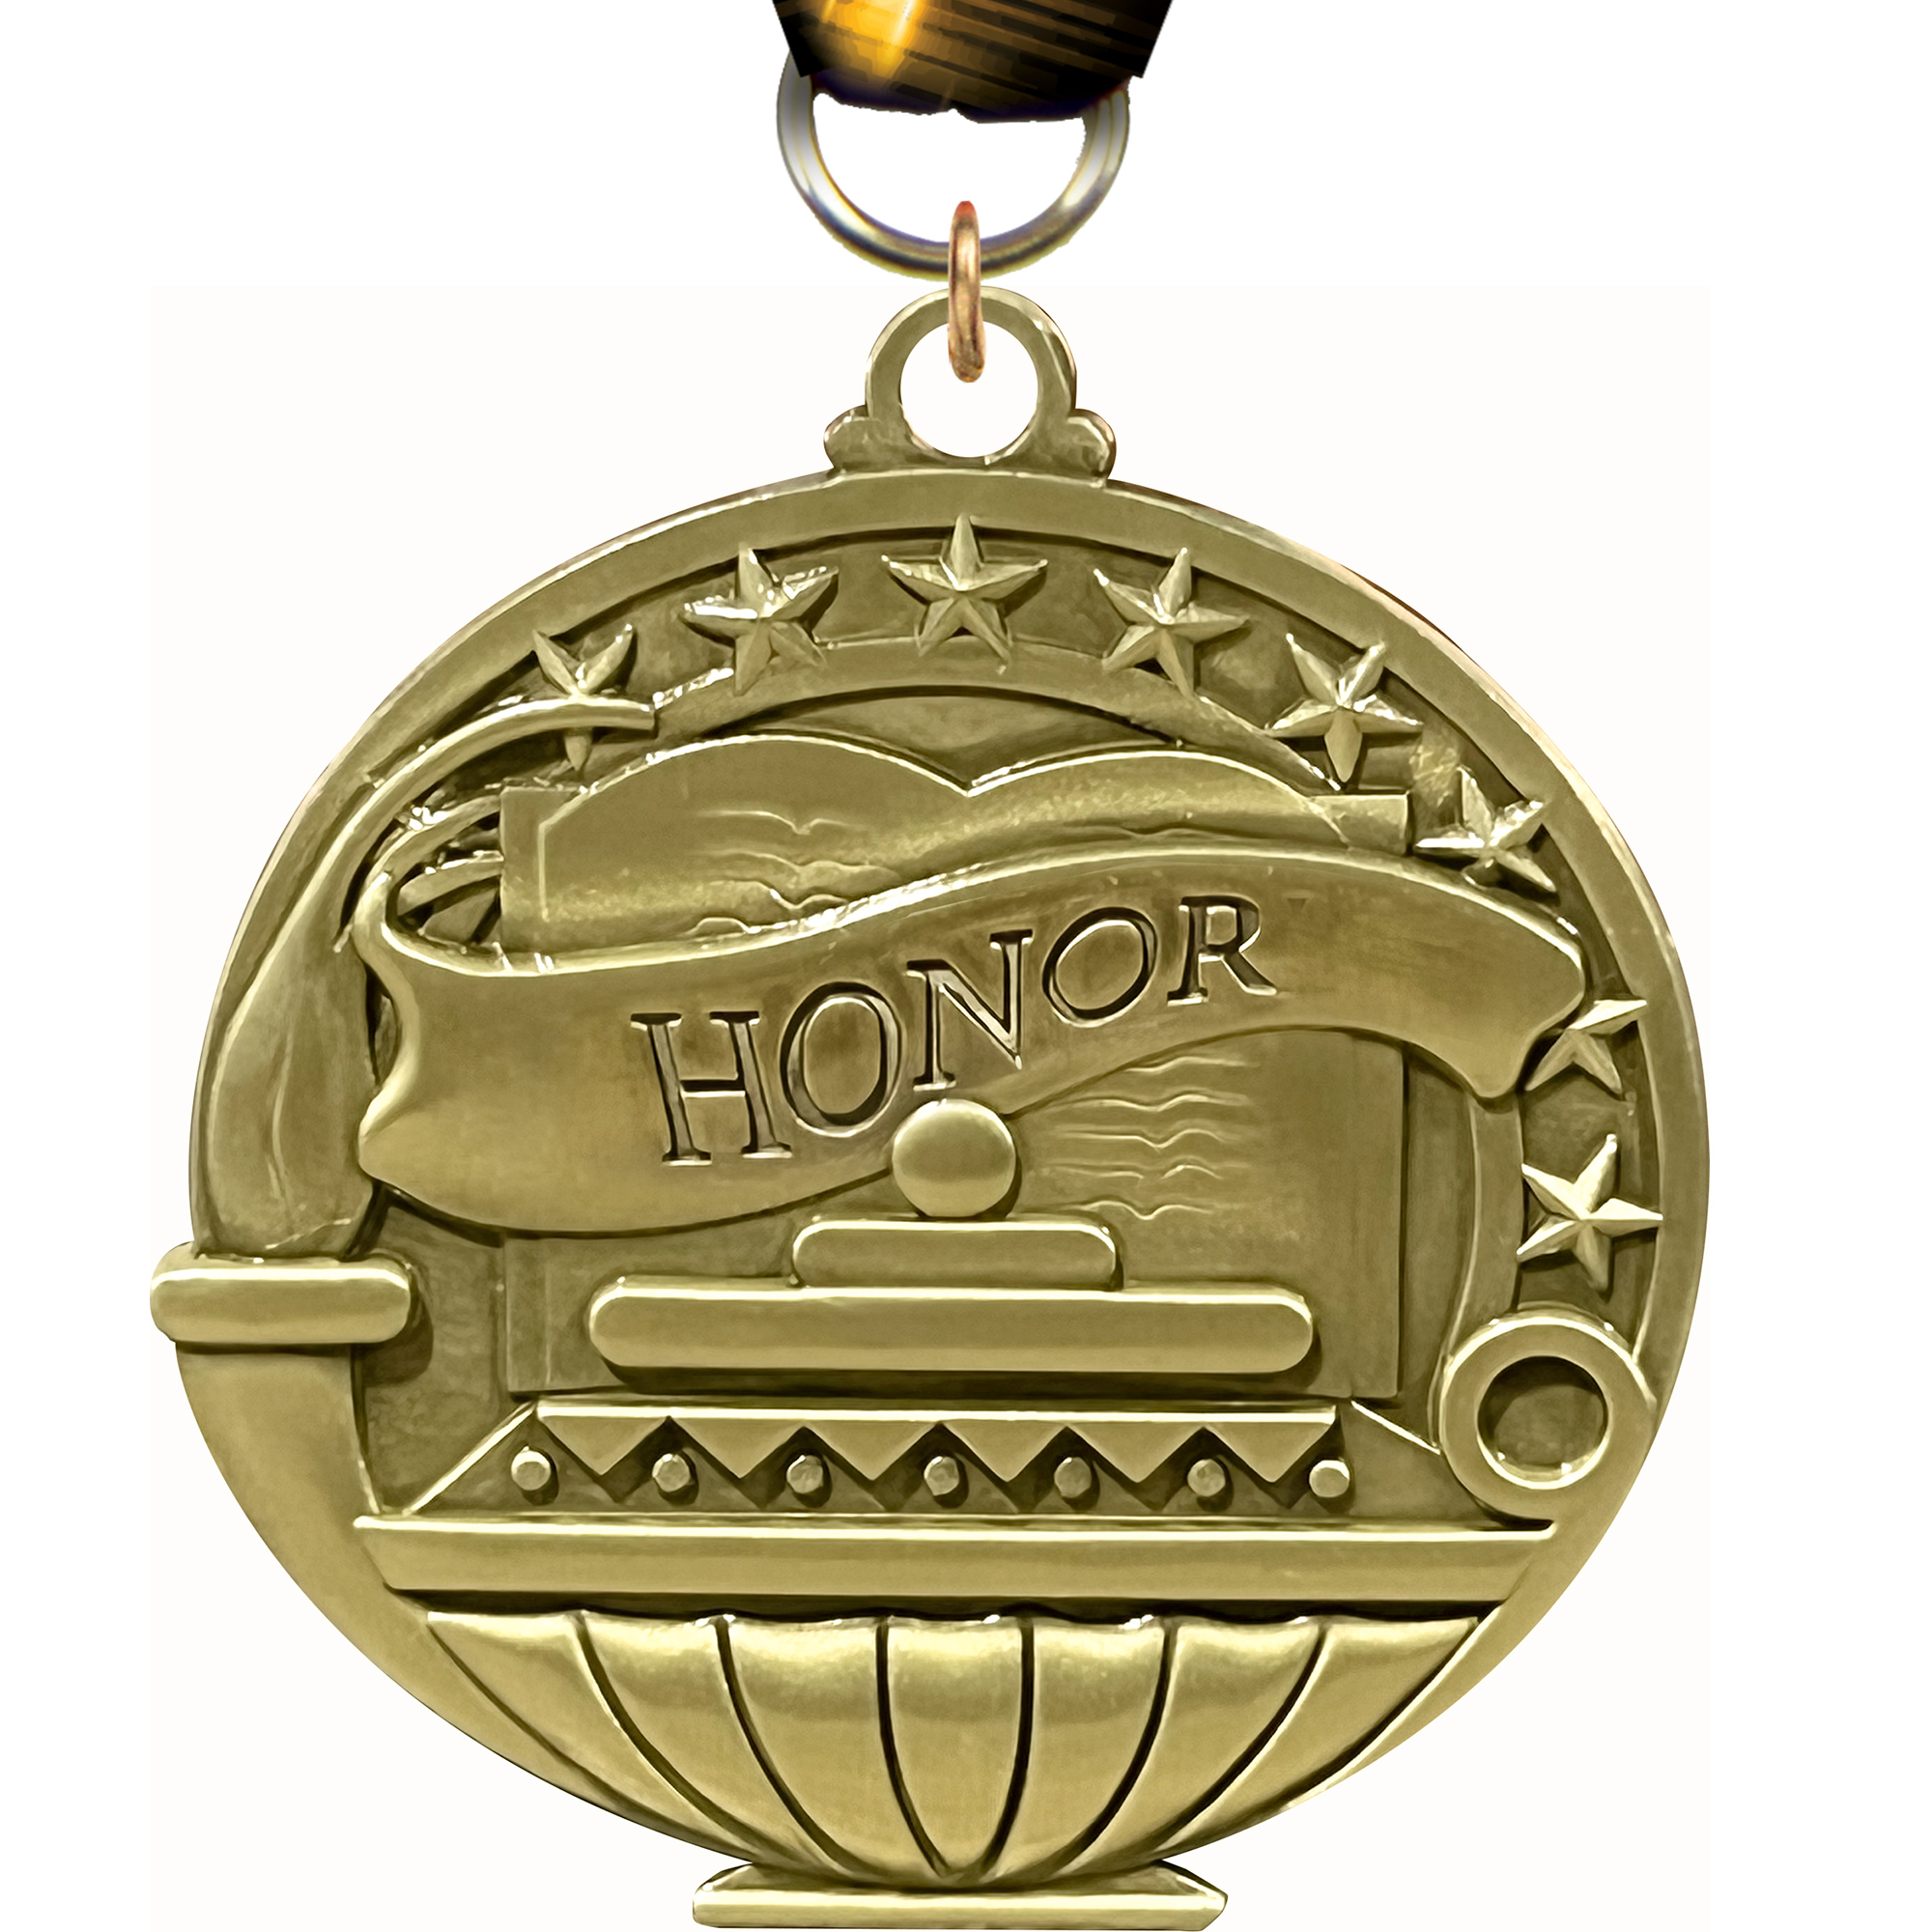 Honor Academic Medal